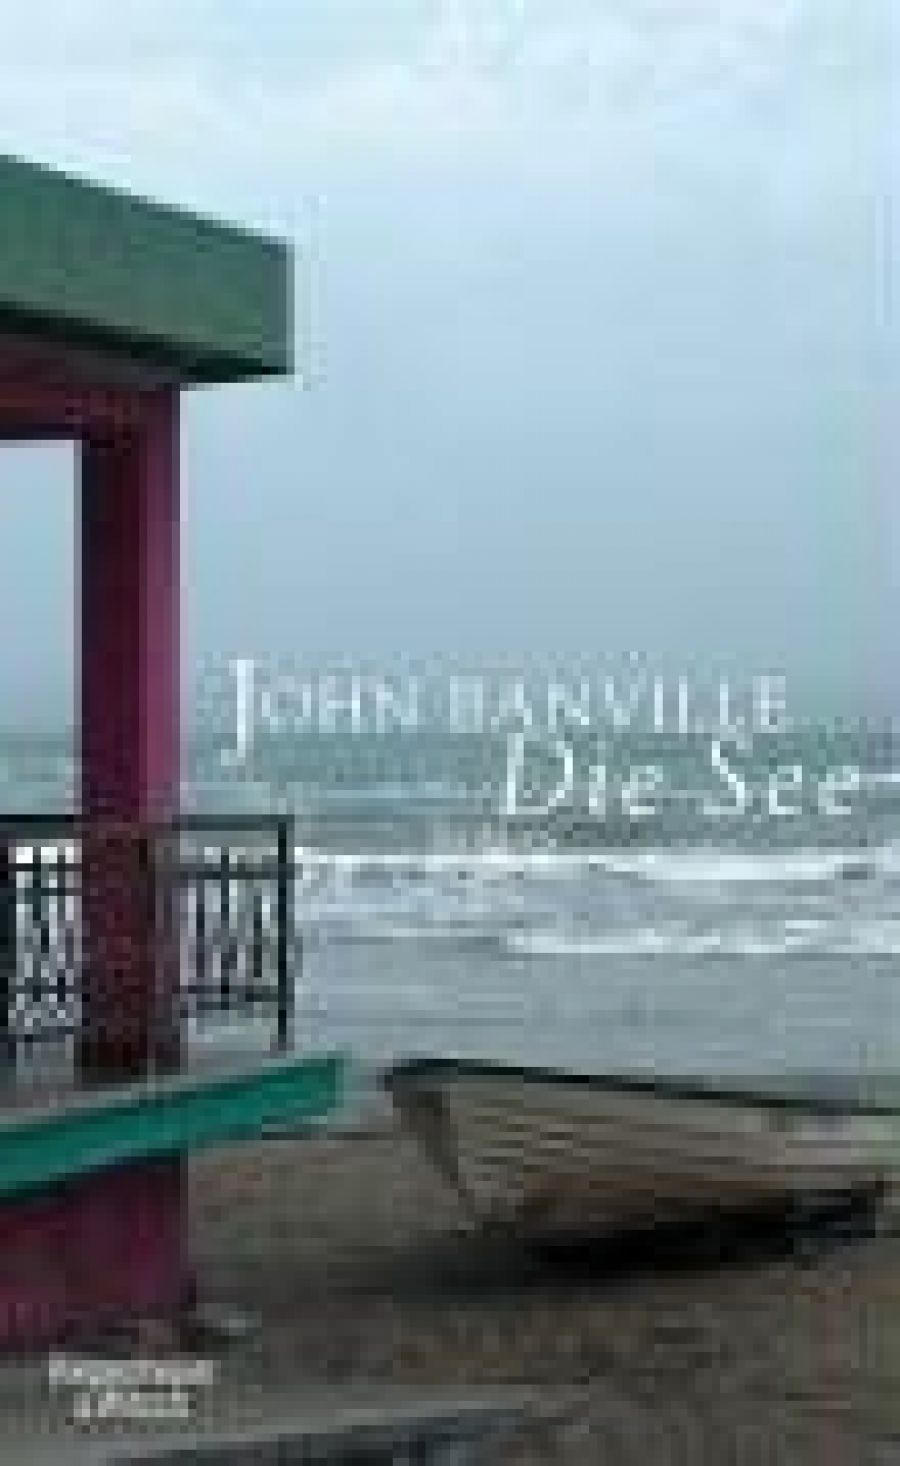 Banville, John See, Die 